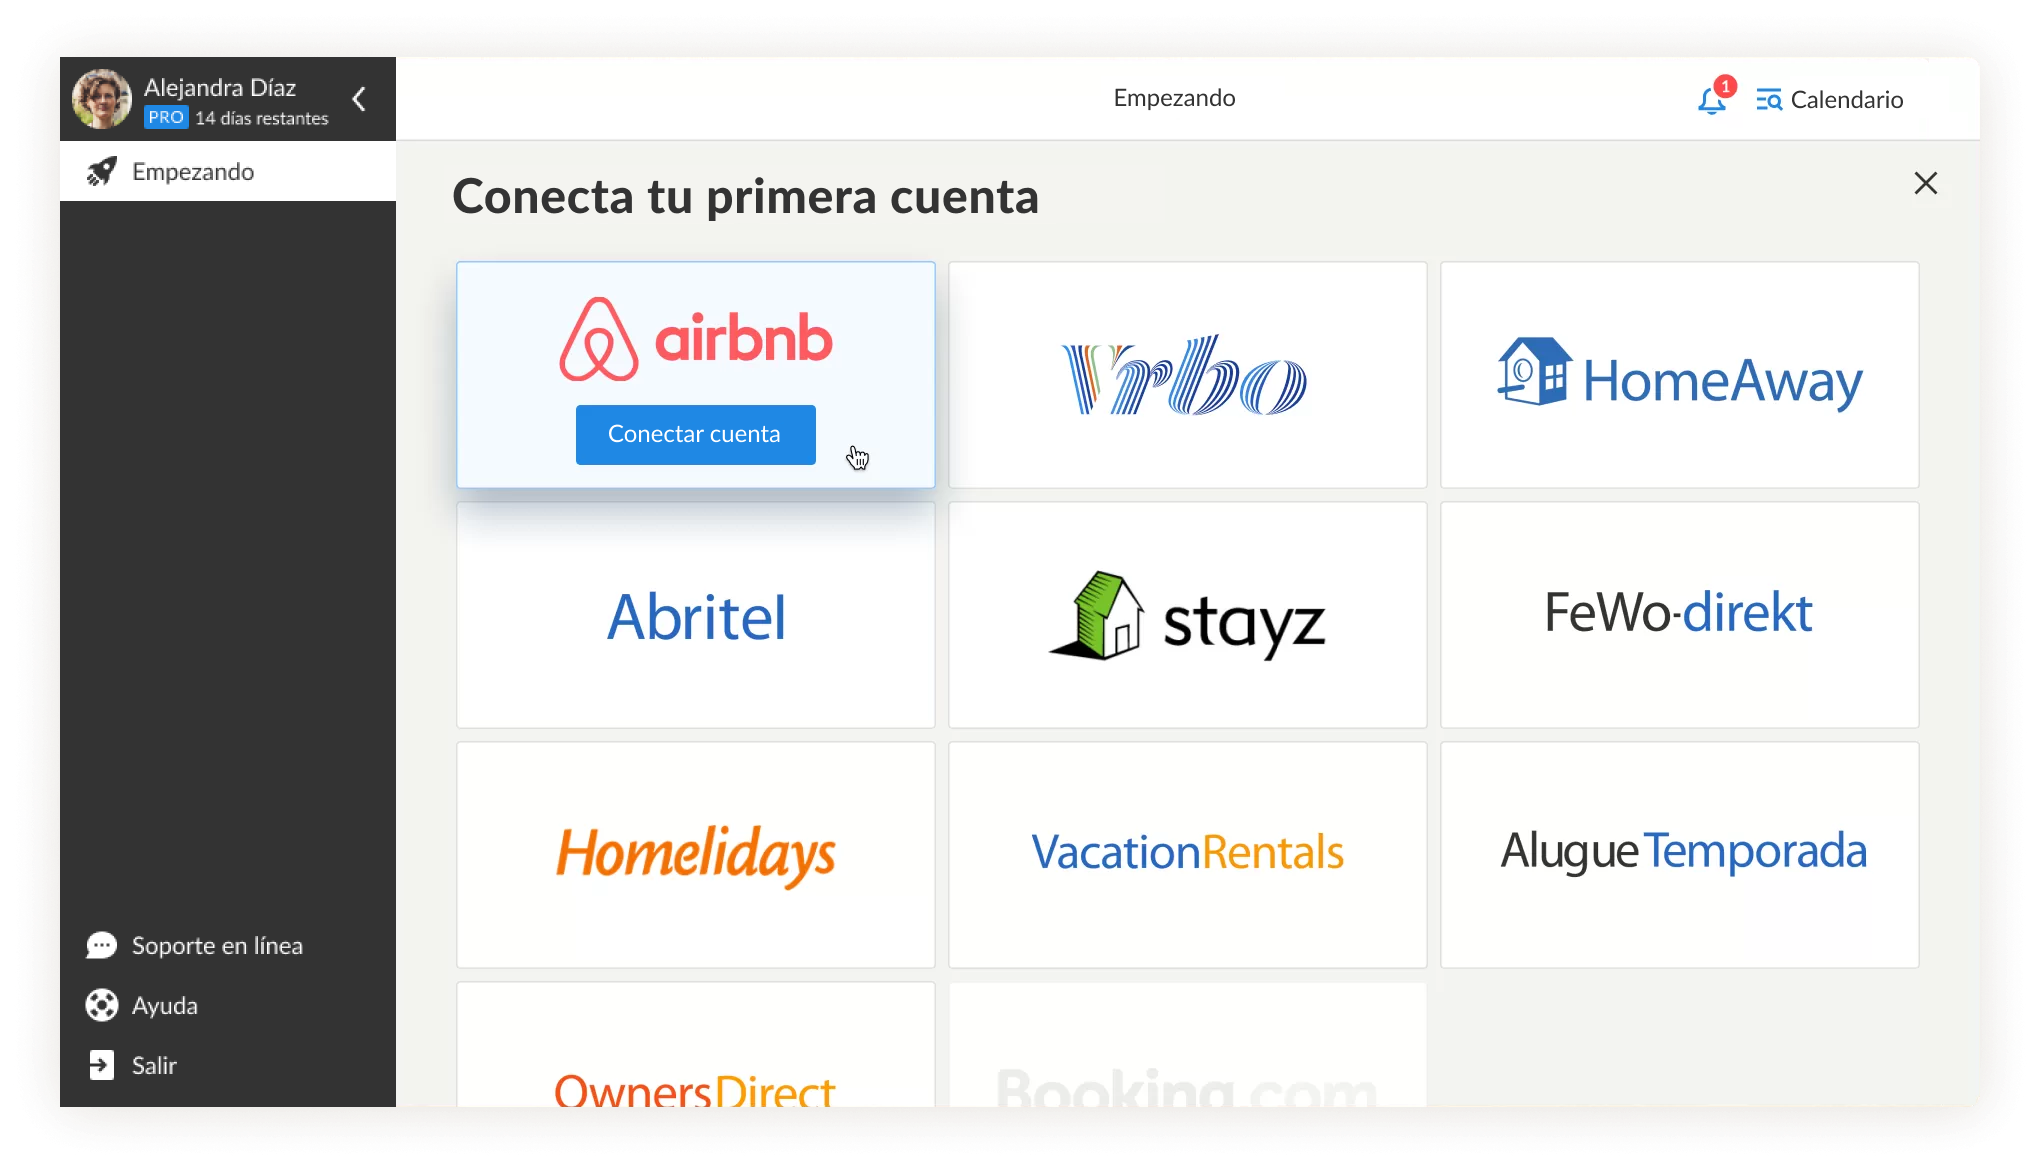 Integración con Airbnb, Booking.com, Vrbo y HomeAway.